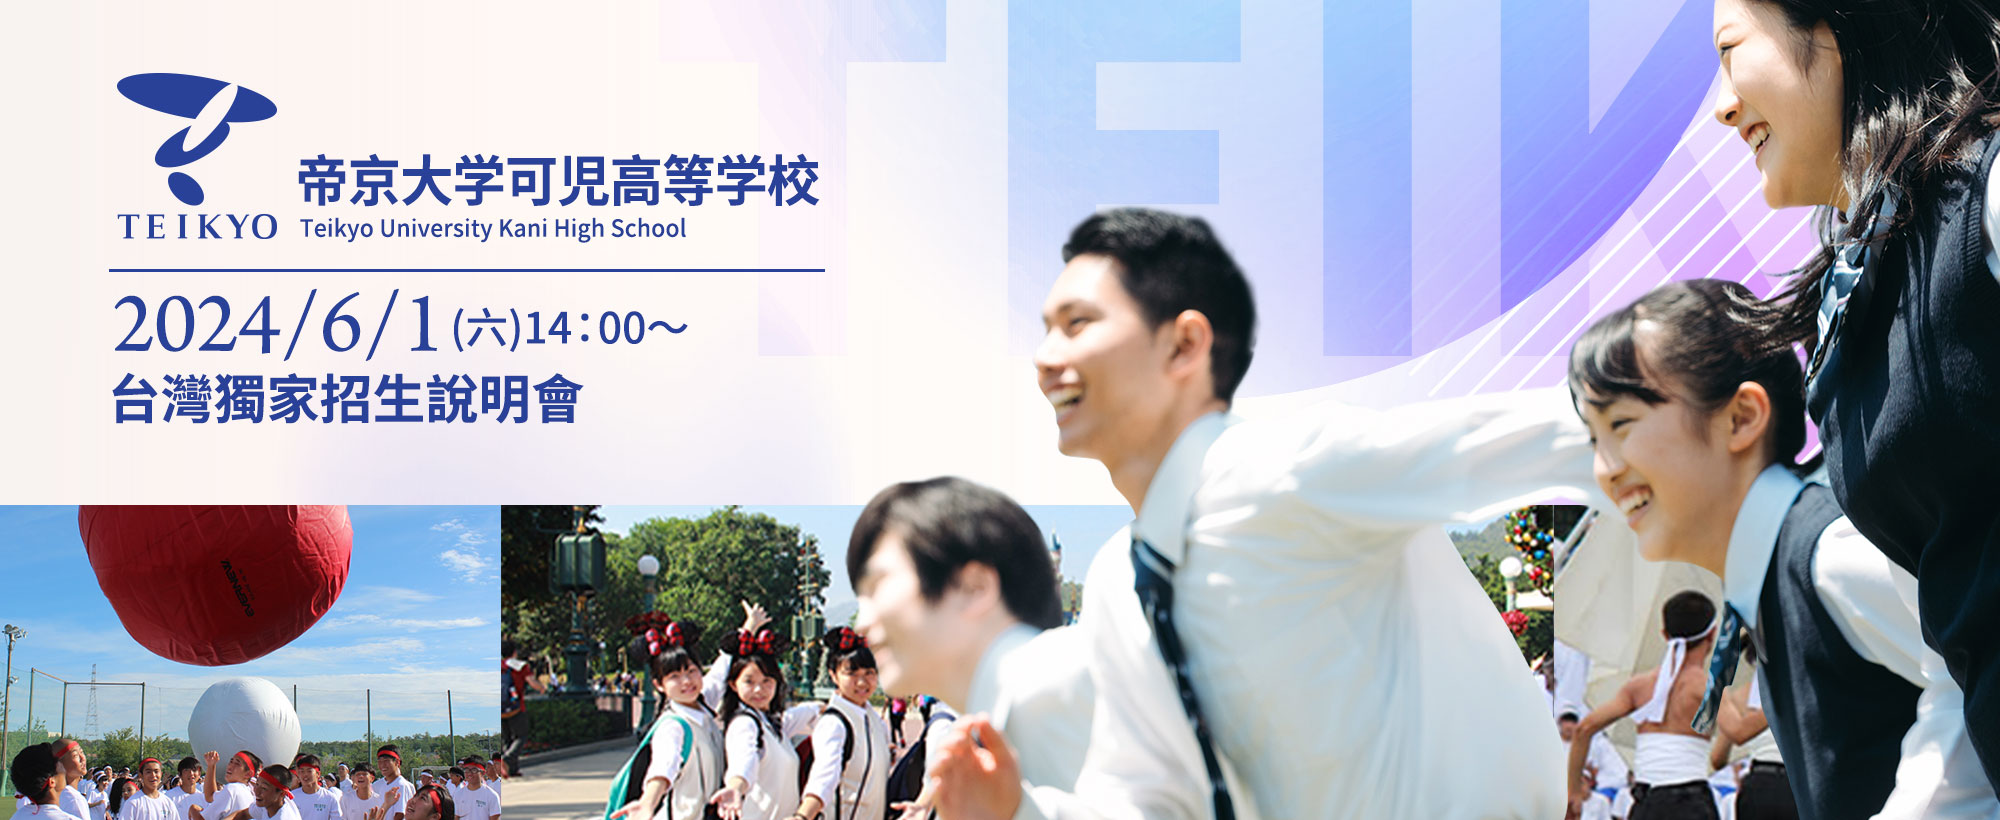 帝京大學可兒高等學校2023/6/3在台招生說明會